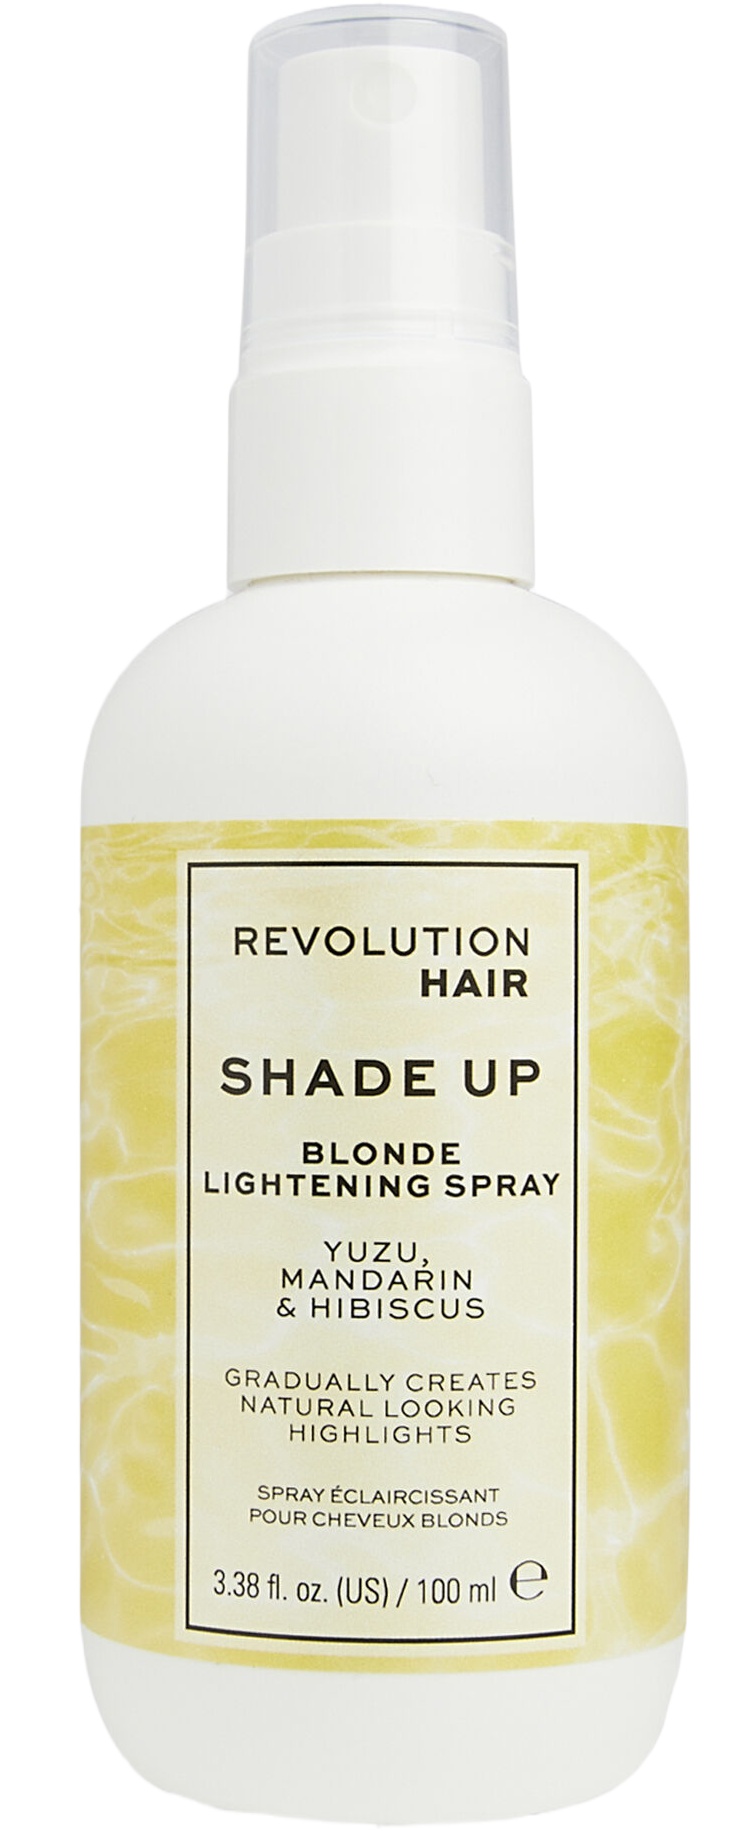 Revolution Haircare Shade Up Blonde Lightening Spray